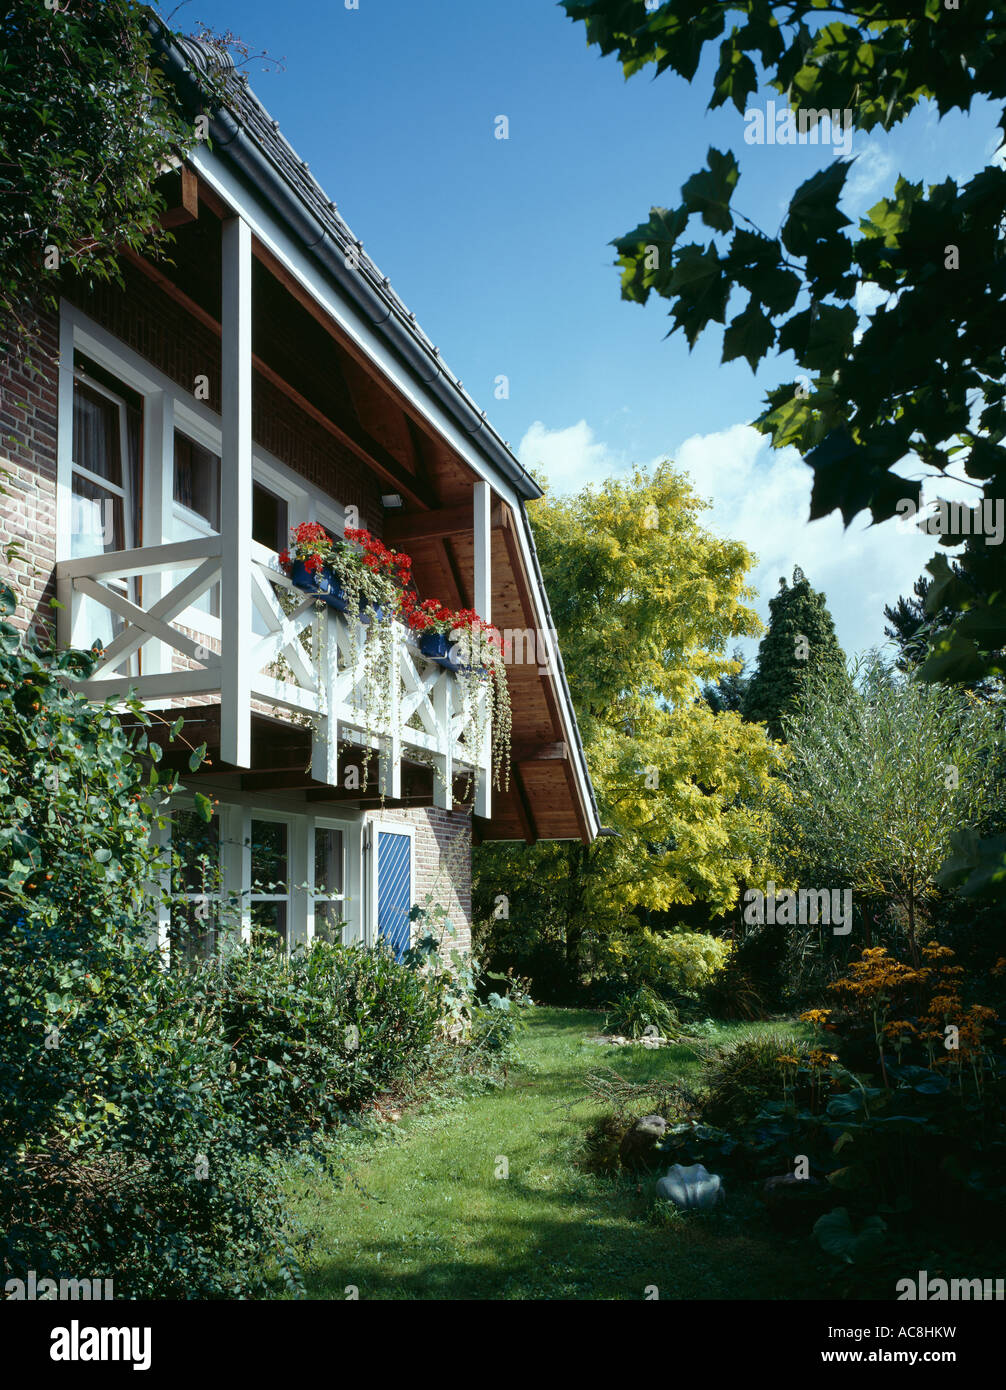 Petite maison de campagne traditionnel allemand avec des géraniums rouges sur balcon Banque D'Images